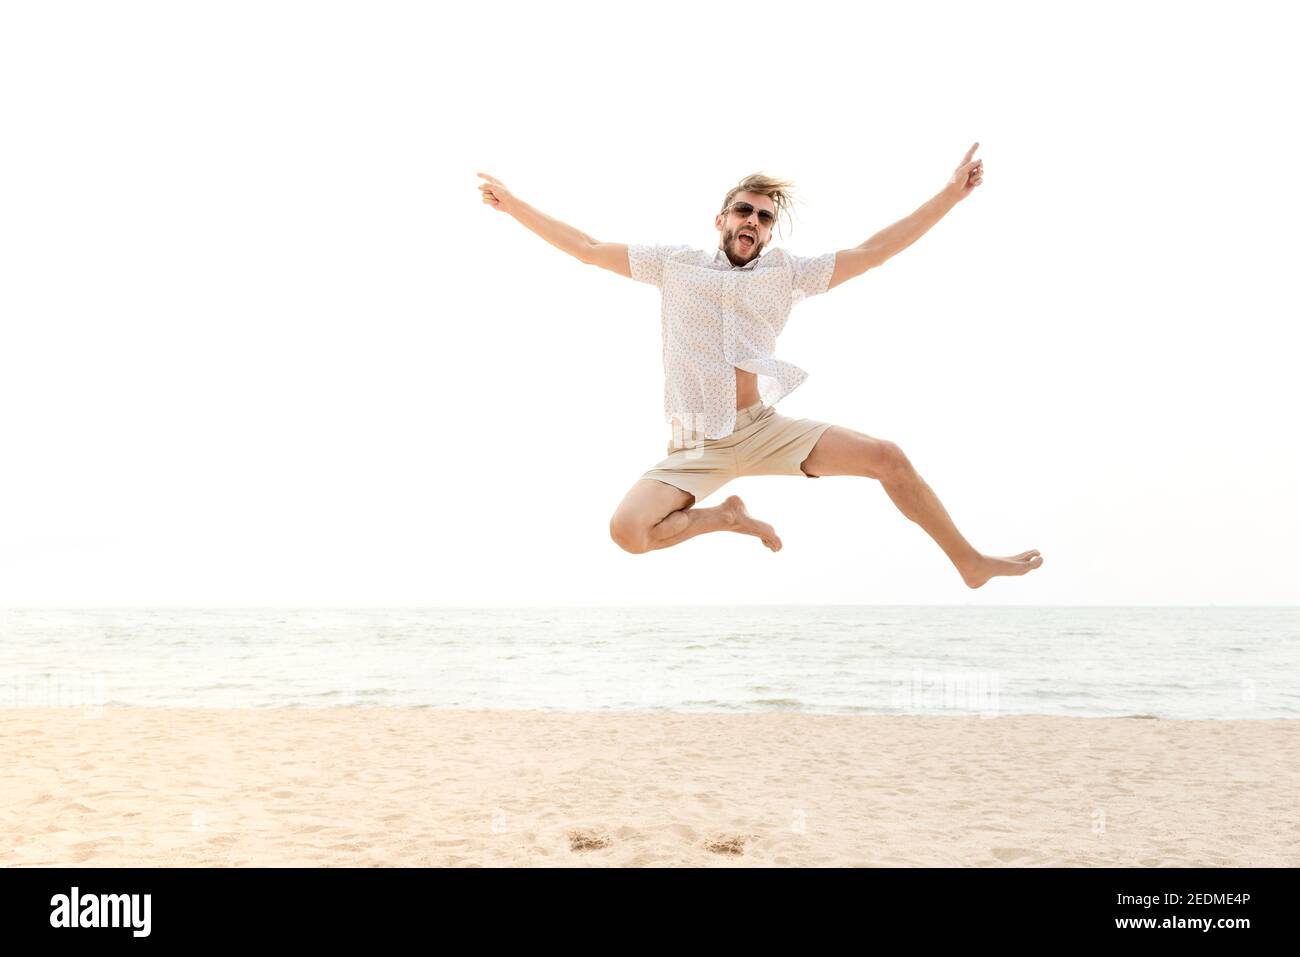 Giovane energico felice uomo turistico che salta in spiaggia per le vacanze estive, divertimento e concetti di libertà Foto Stock